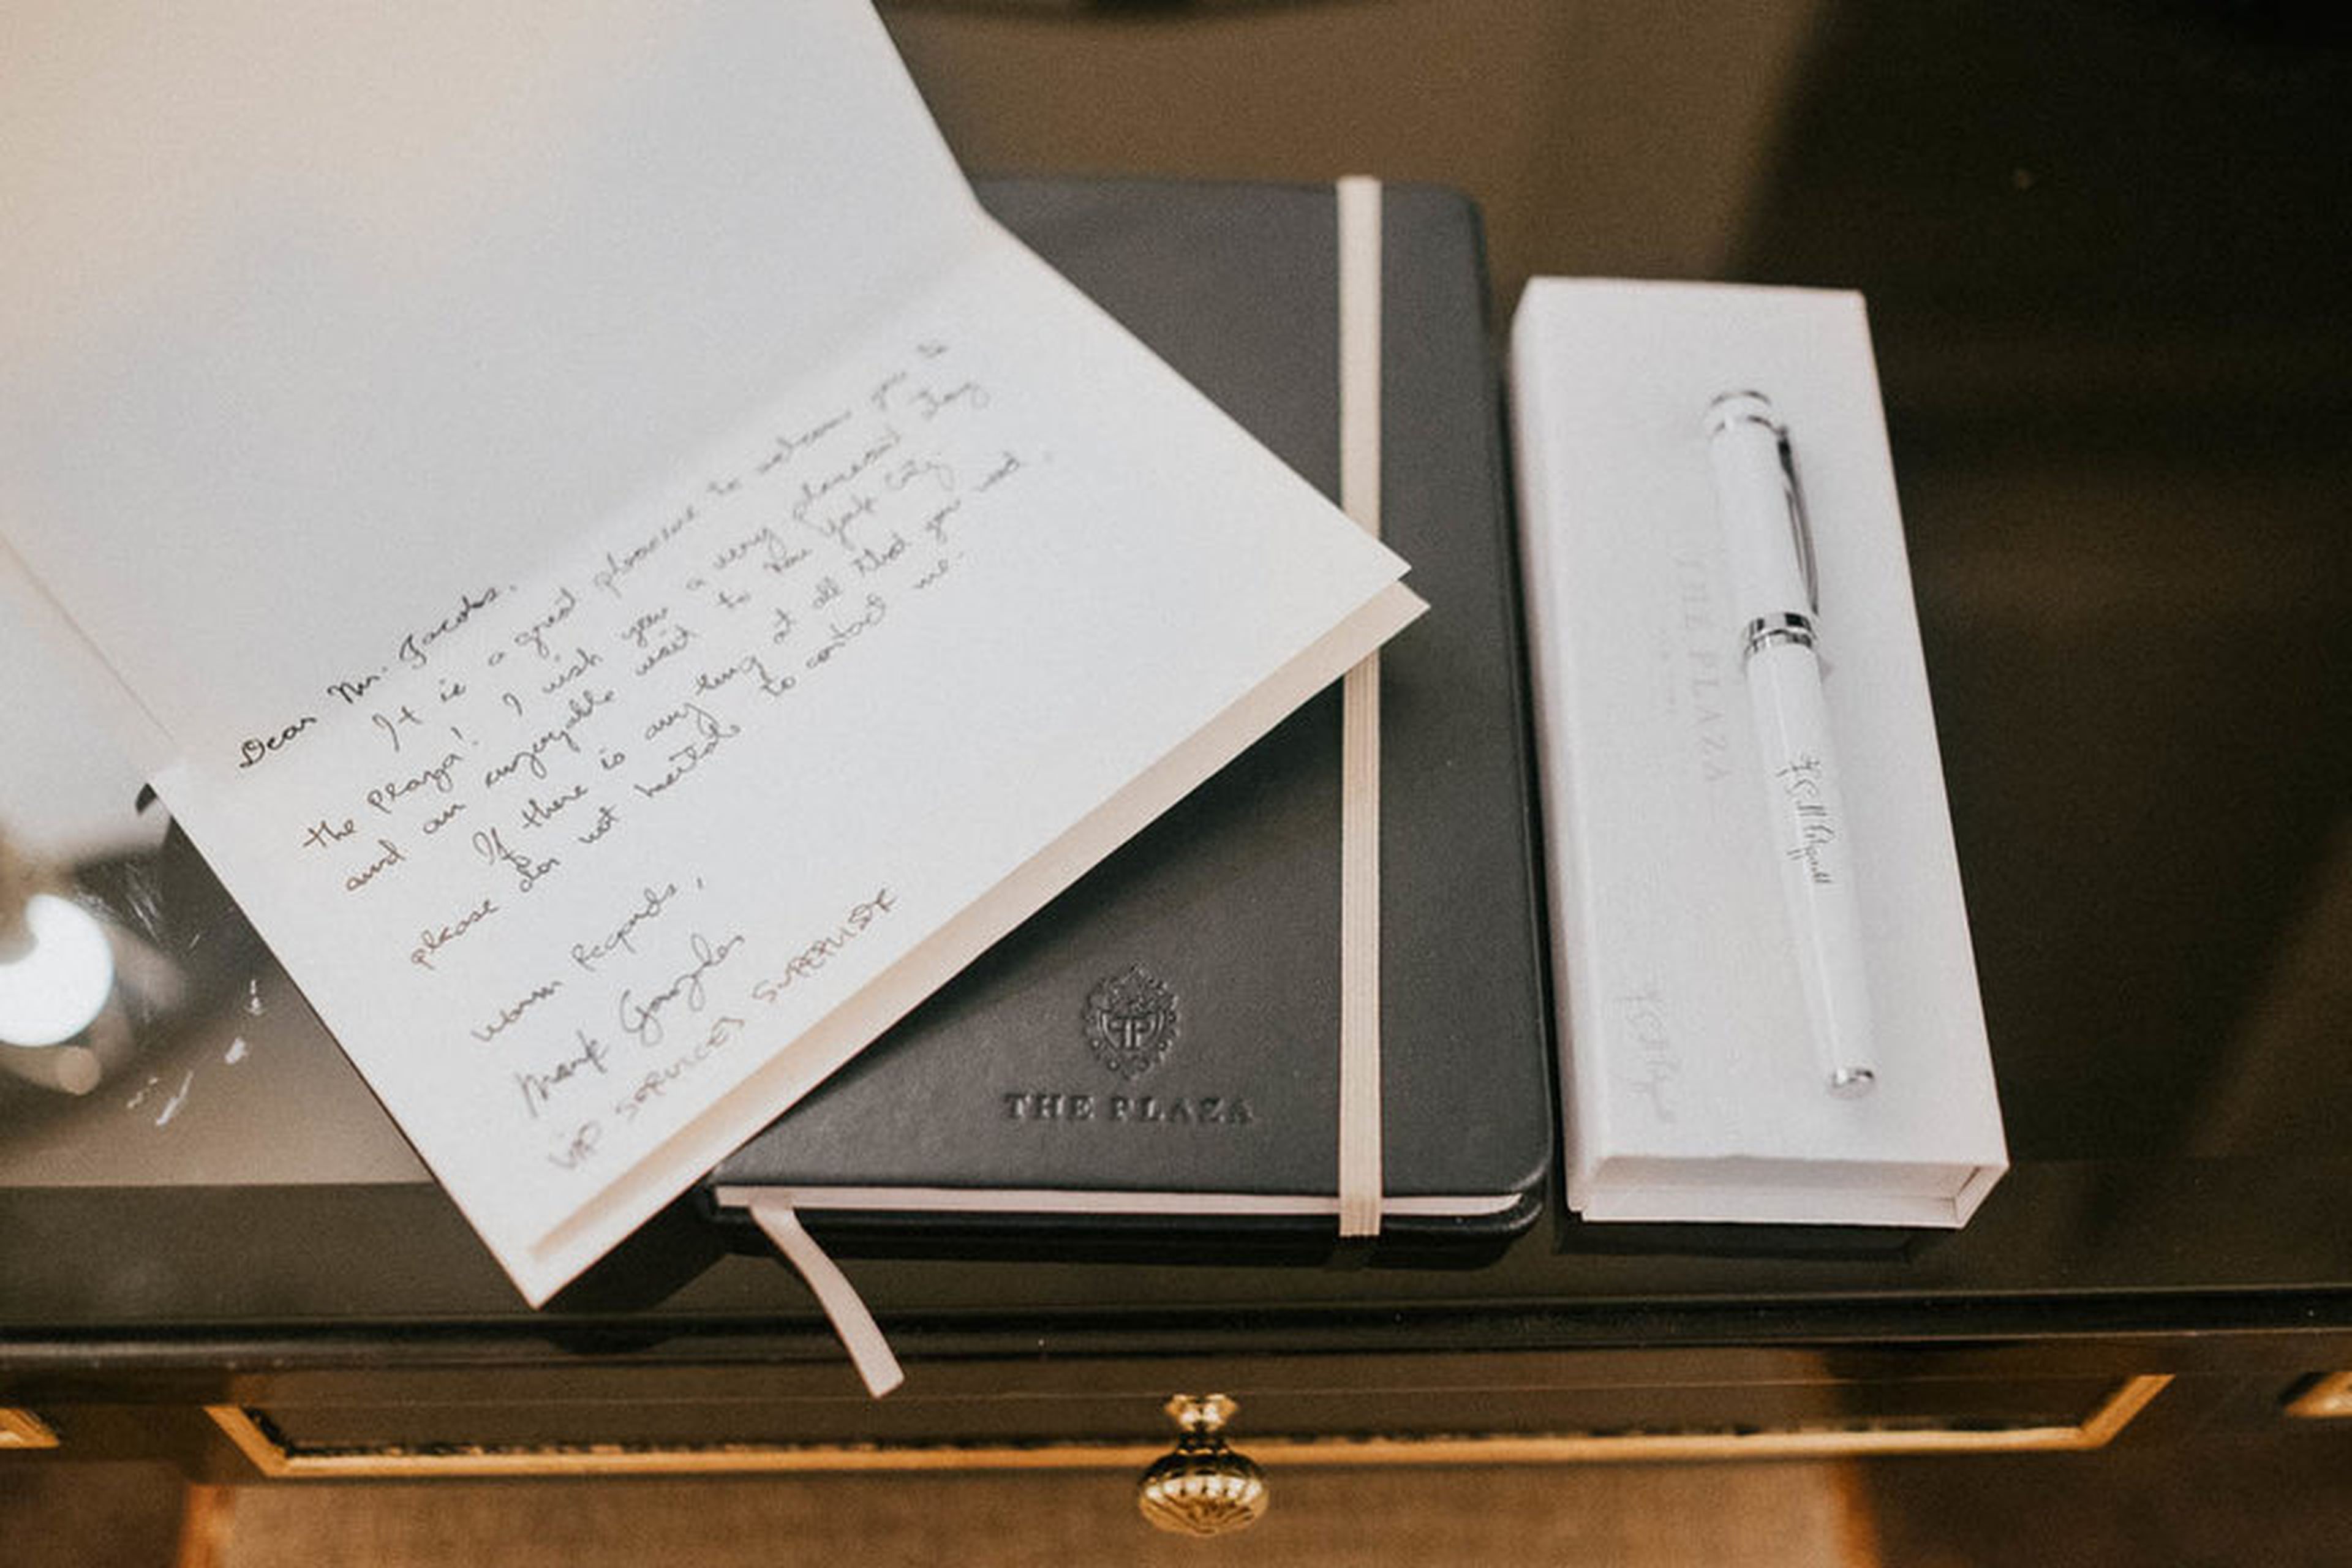 Encontré una carta escrita a mano por el servicios de invitados VIP y un cuaderno y bolígrafo de cortesía. Es un poco más alto que el cuaderno de notas habitual que dan en la mayoría de las habitaciones de hotel.